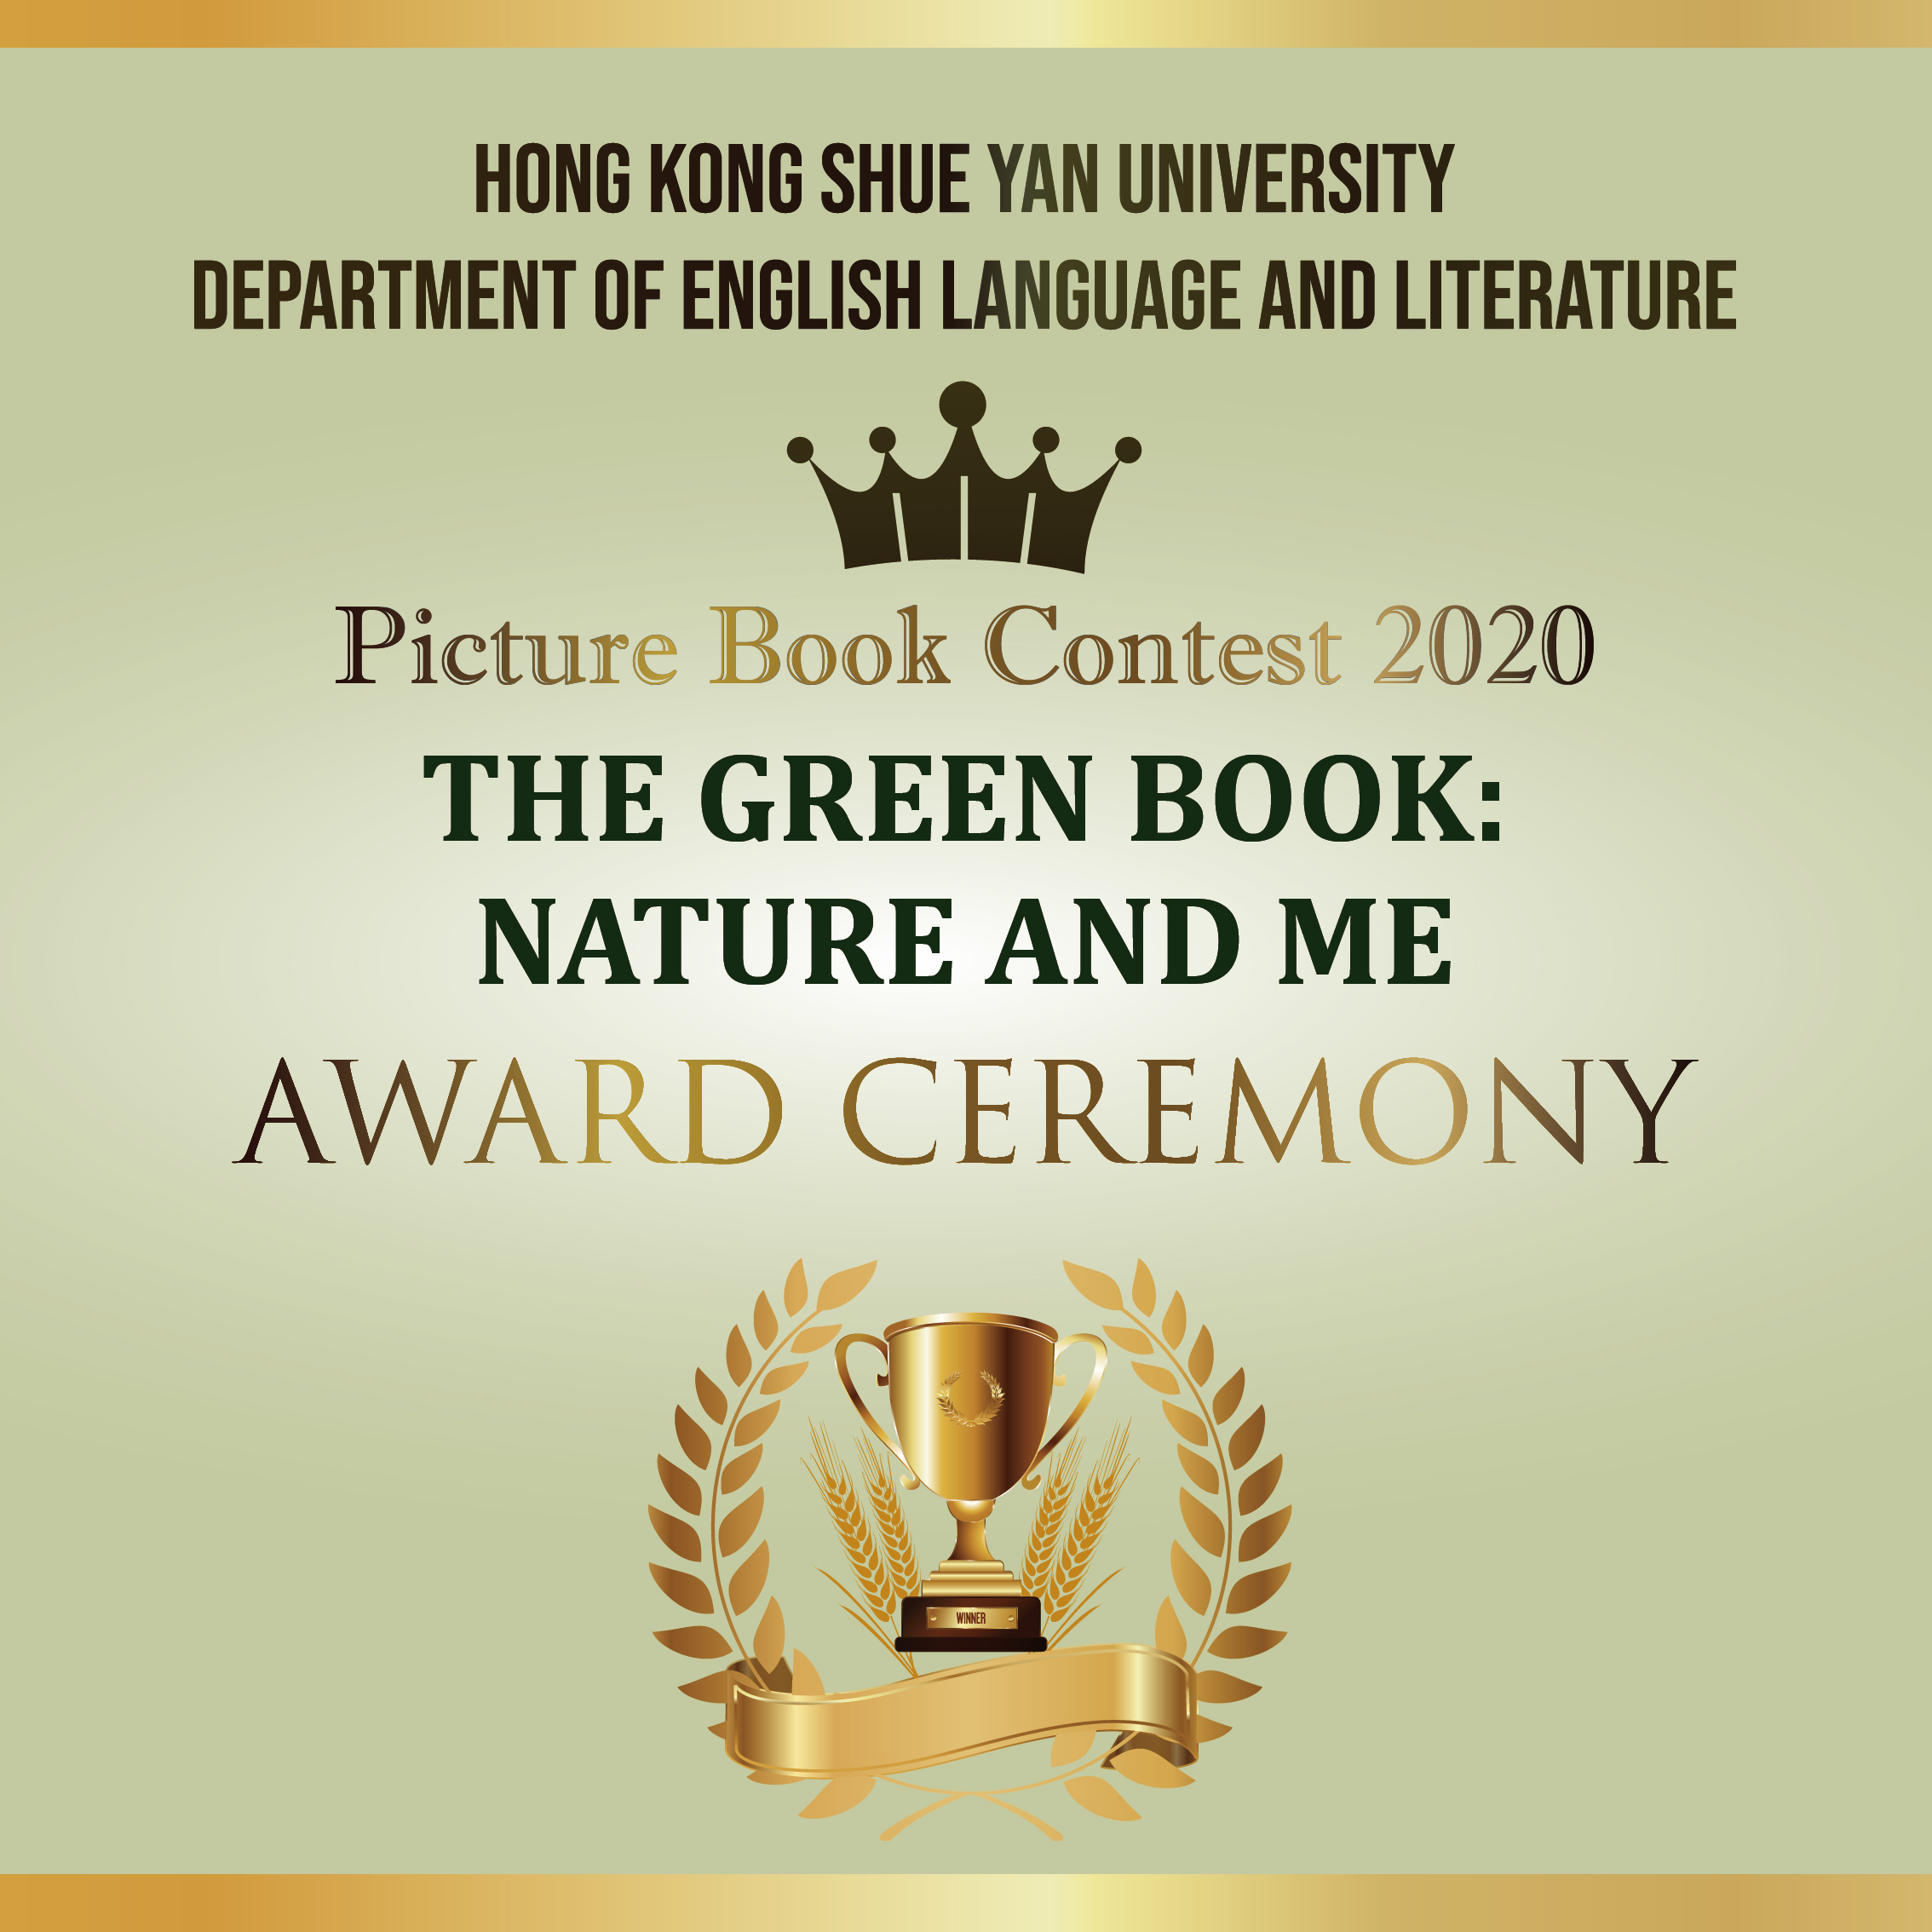 英国语言文学系「The Green Book: Nature and Me」绘本创作比赛2020颁奖典礼